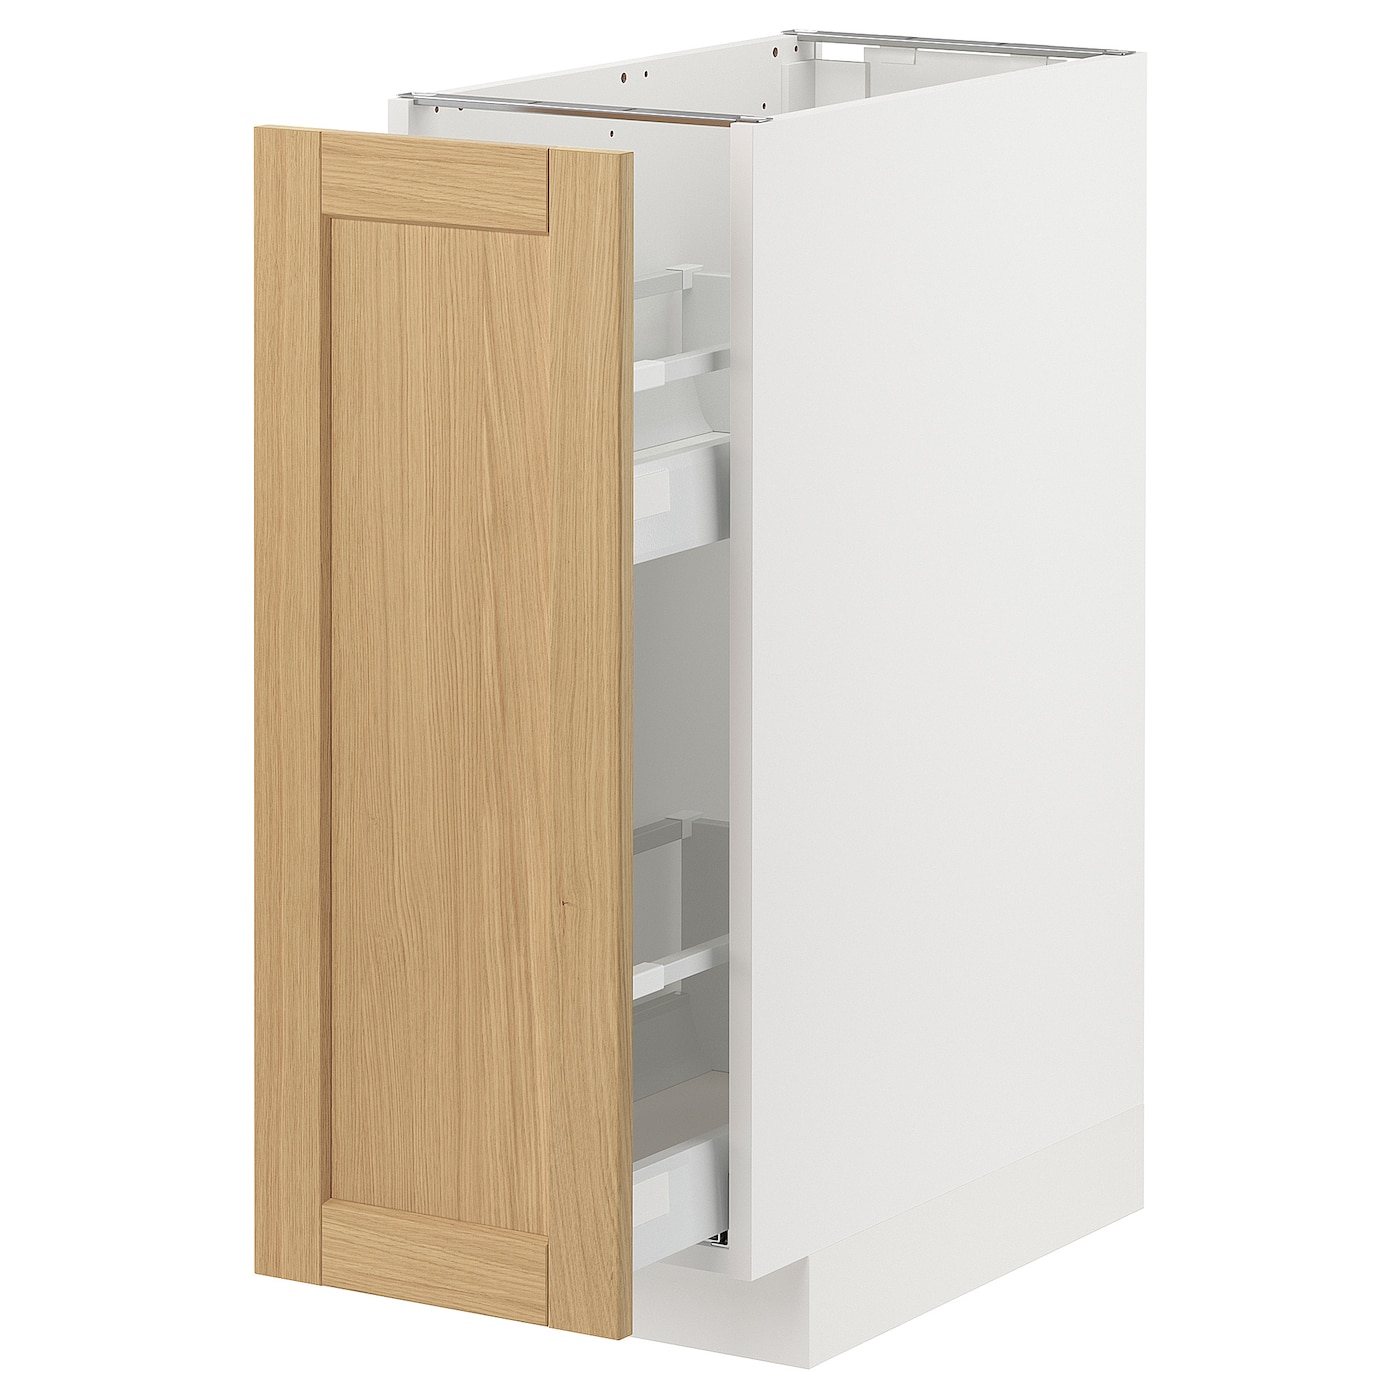 Напольный шкаф - METOD / MAXIMERA IKEA/ МЕТОД/ МАКСИМЕРА ИКЕА,  30х60 см, белый/под беленый дуб